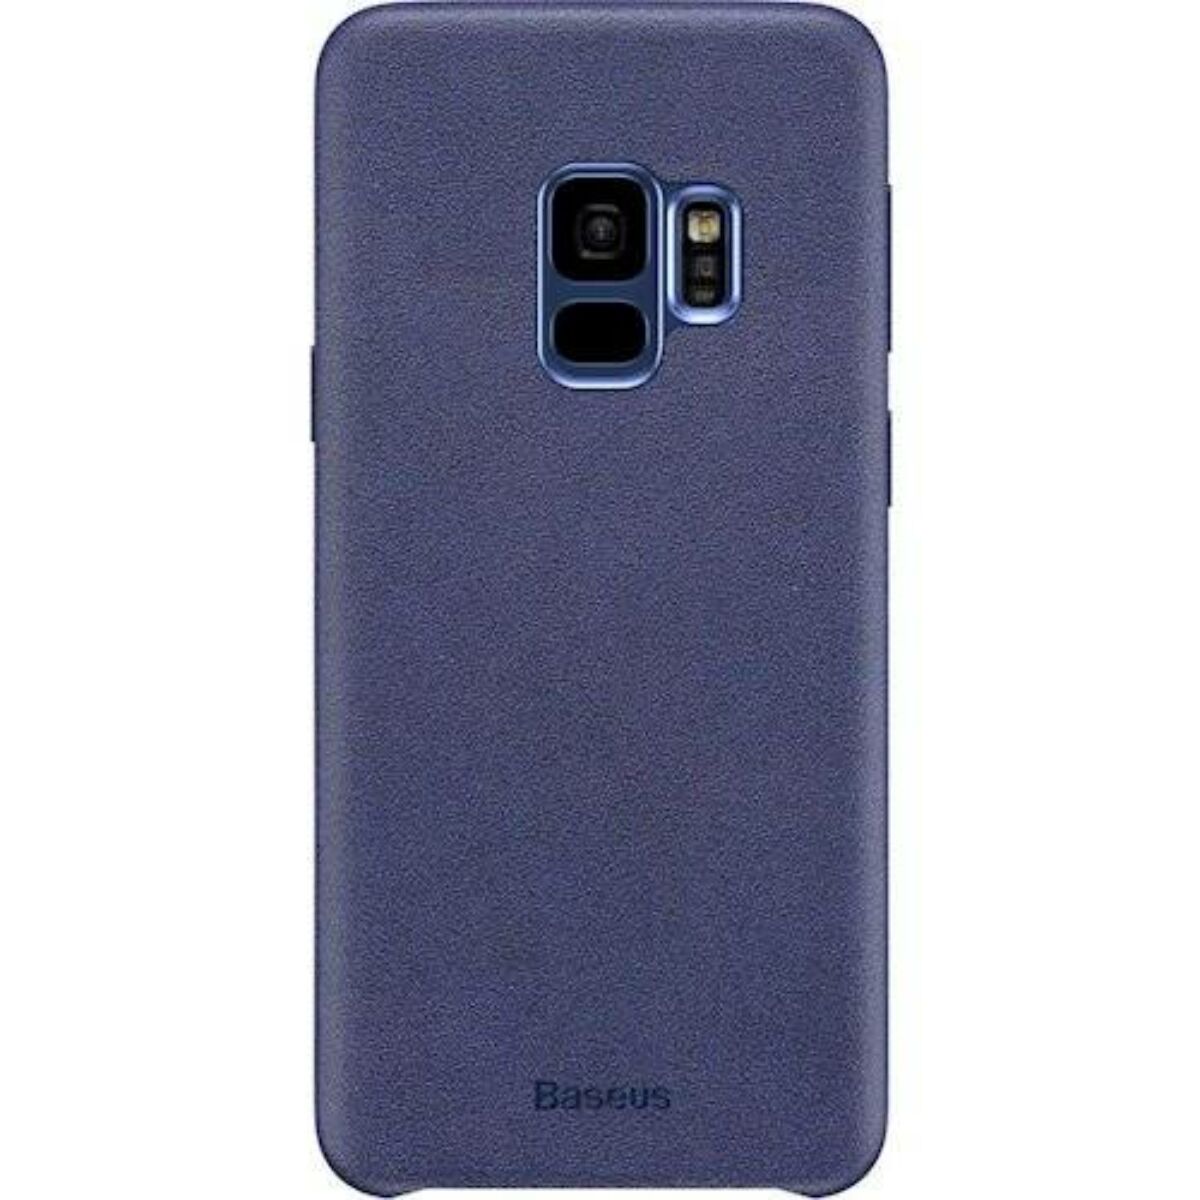 Kép 2/6 - Baseus Samsung S9 tok, Original, kék (WISAS9-YP03)